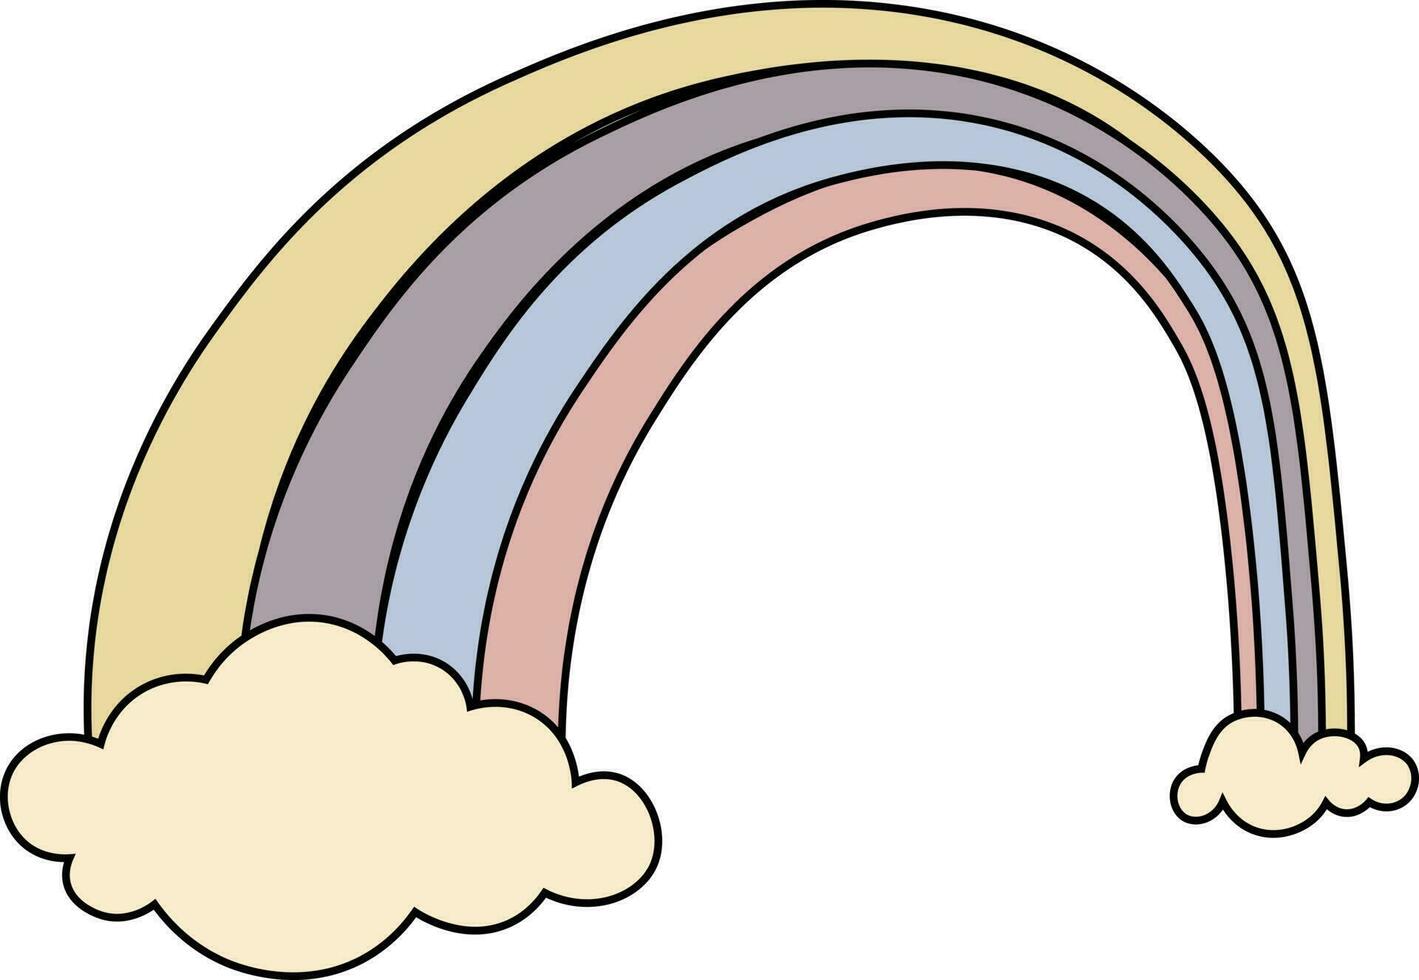 abstract regenboog achtergrond voorraad vector illustratie.